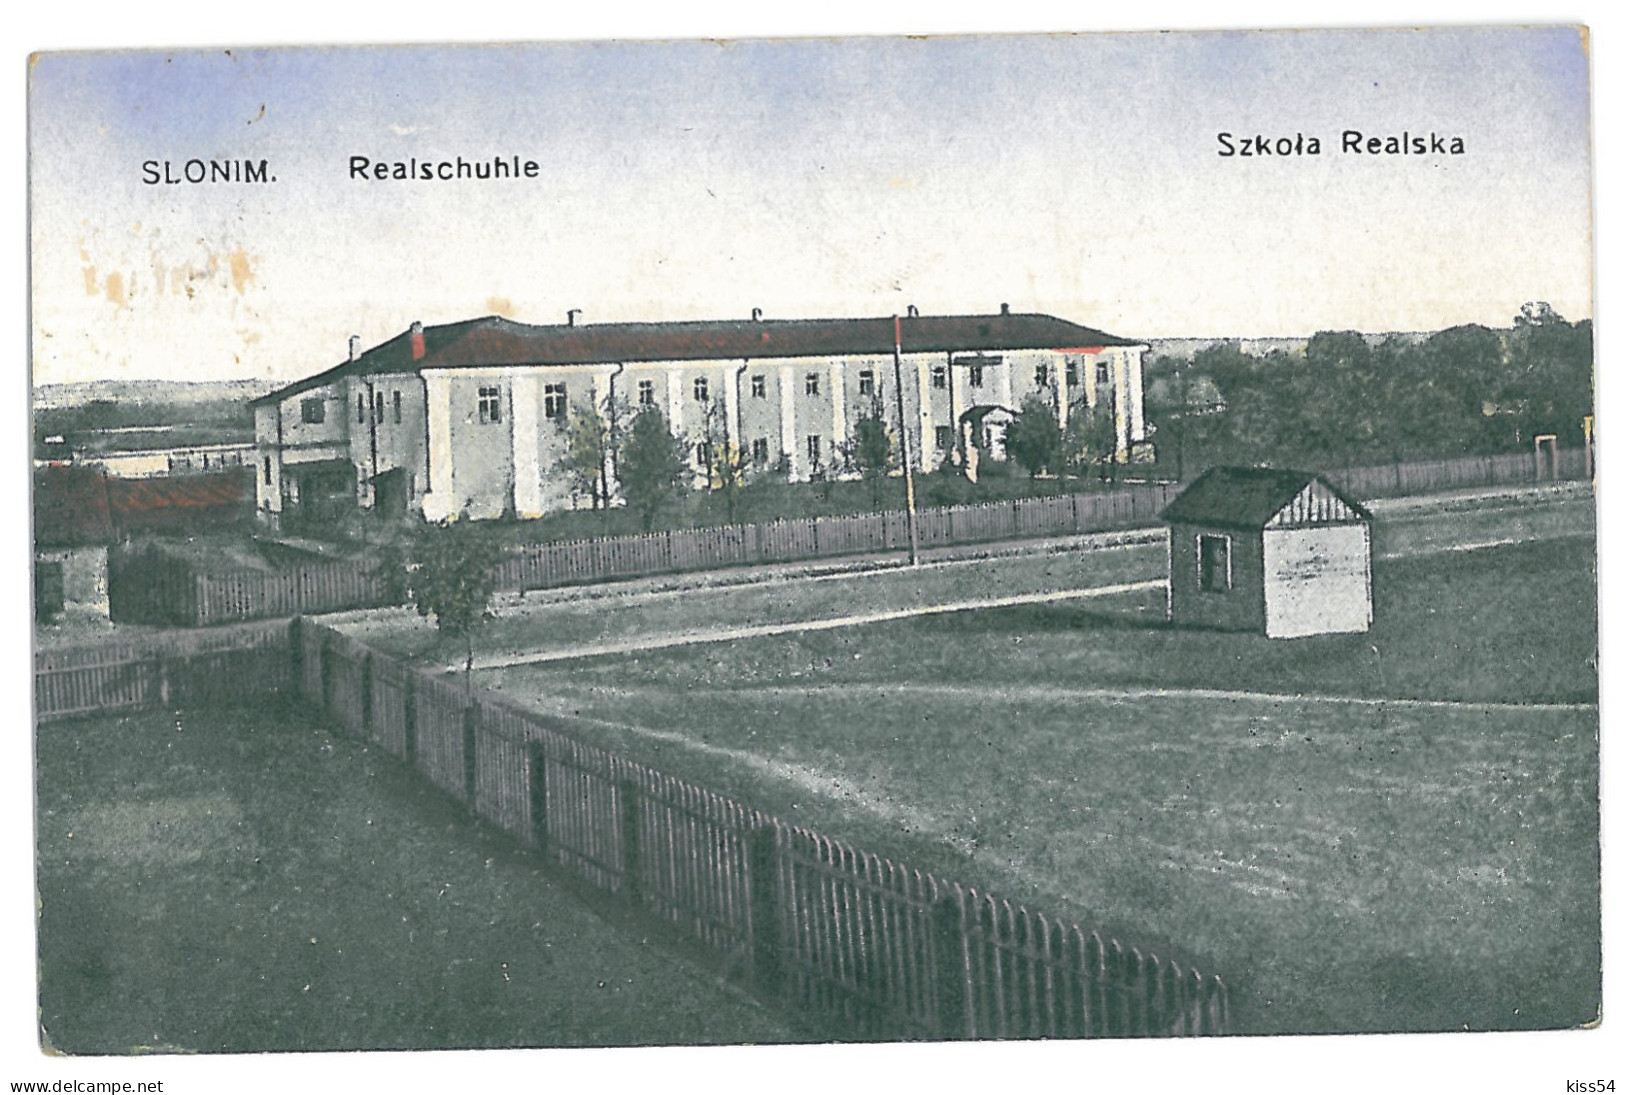 BL 28 - 13815 SLONIM, School, Belarus - Old Postcard, CENSOR - Used - 1916 - Wit-Rusland